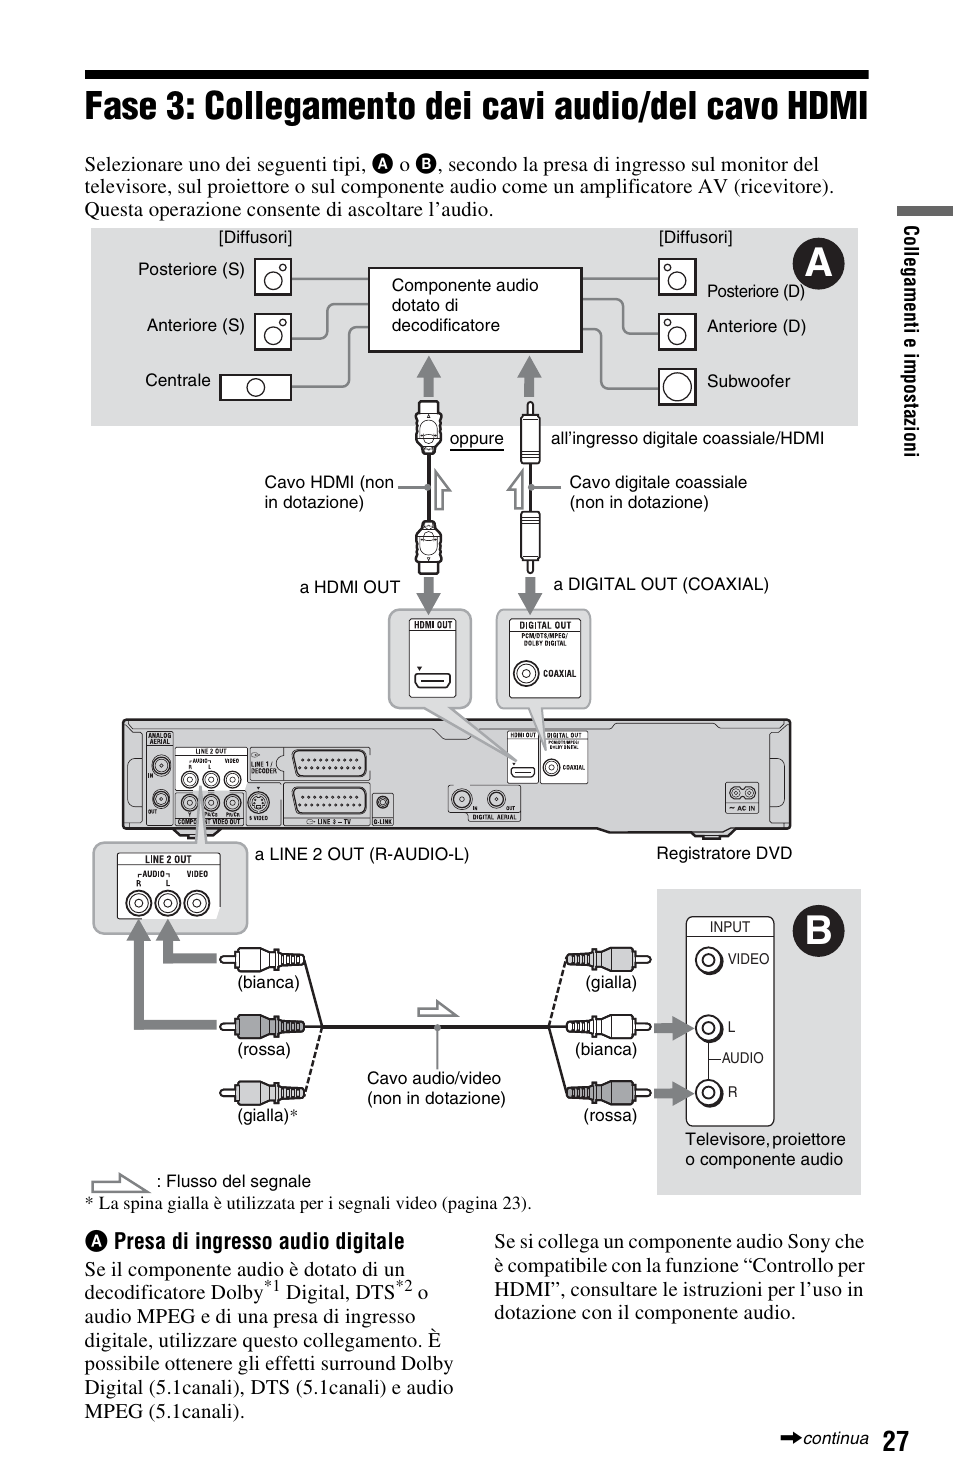 Fase 3: collegamento dei cavi audio/del cavo hdmi, Xial) | Sony RDR-HXD890 Manuale d'uso | Pagina 27 / 188